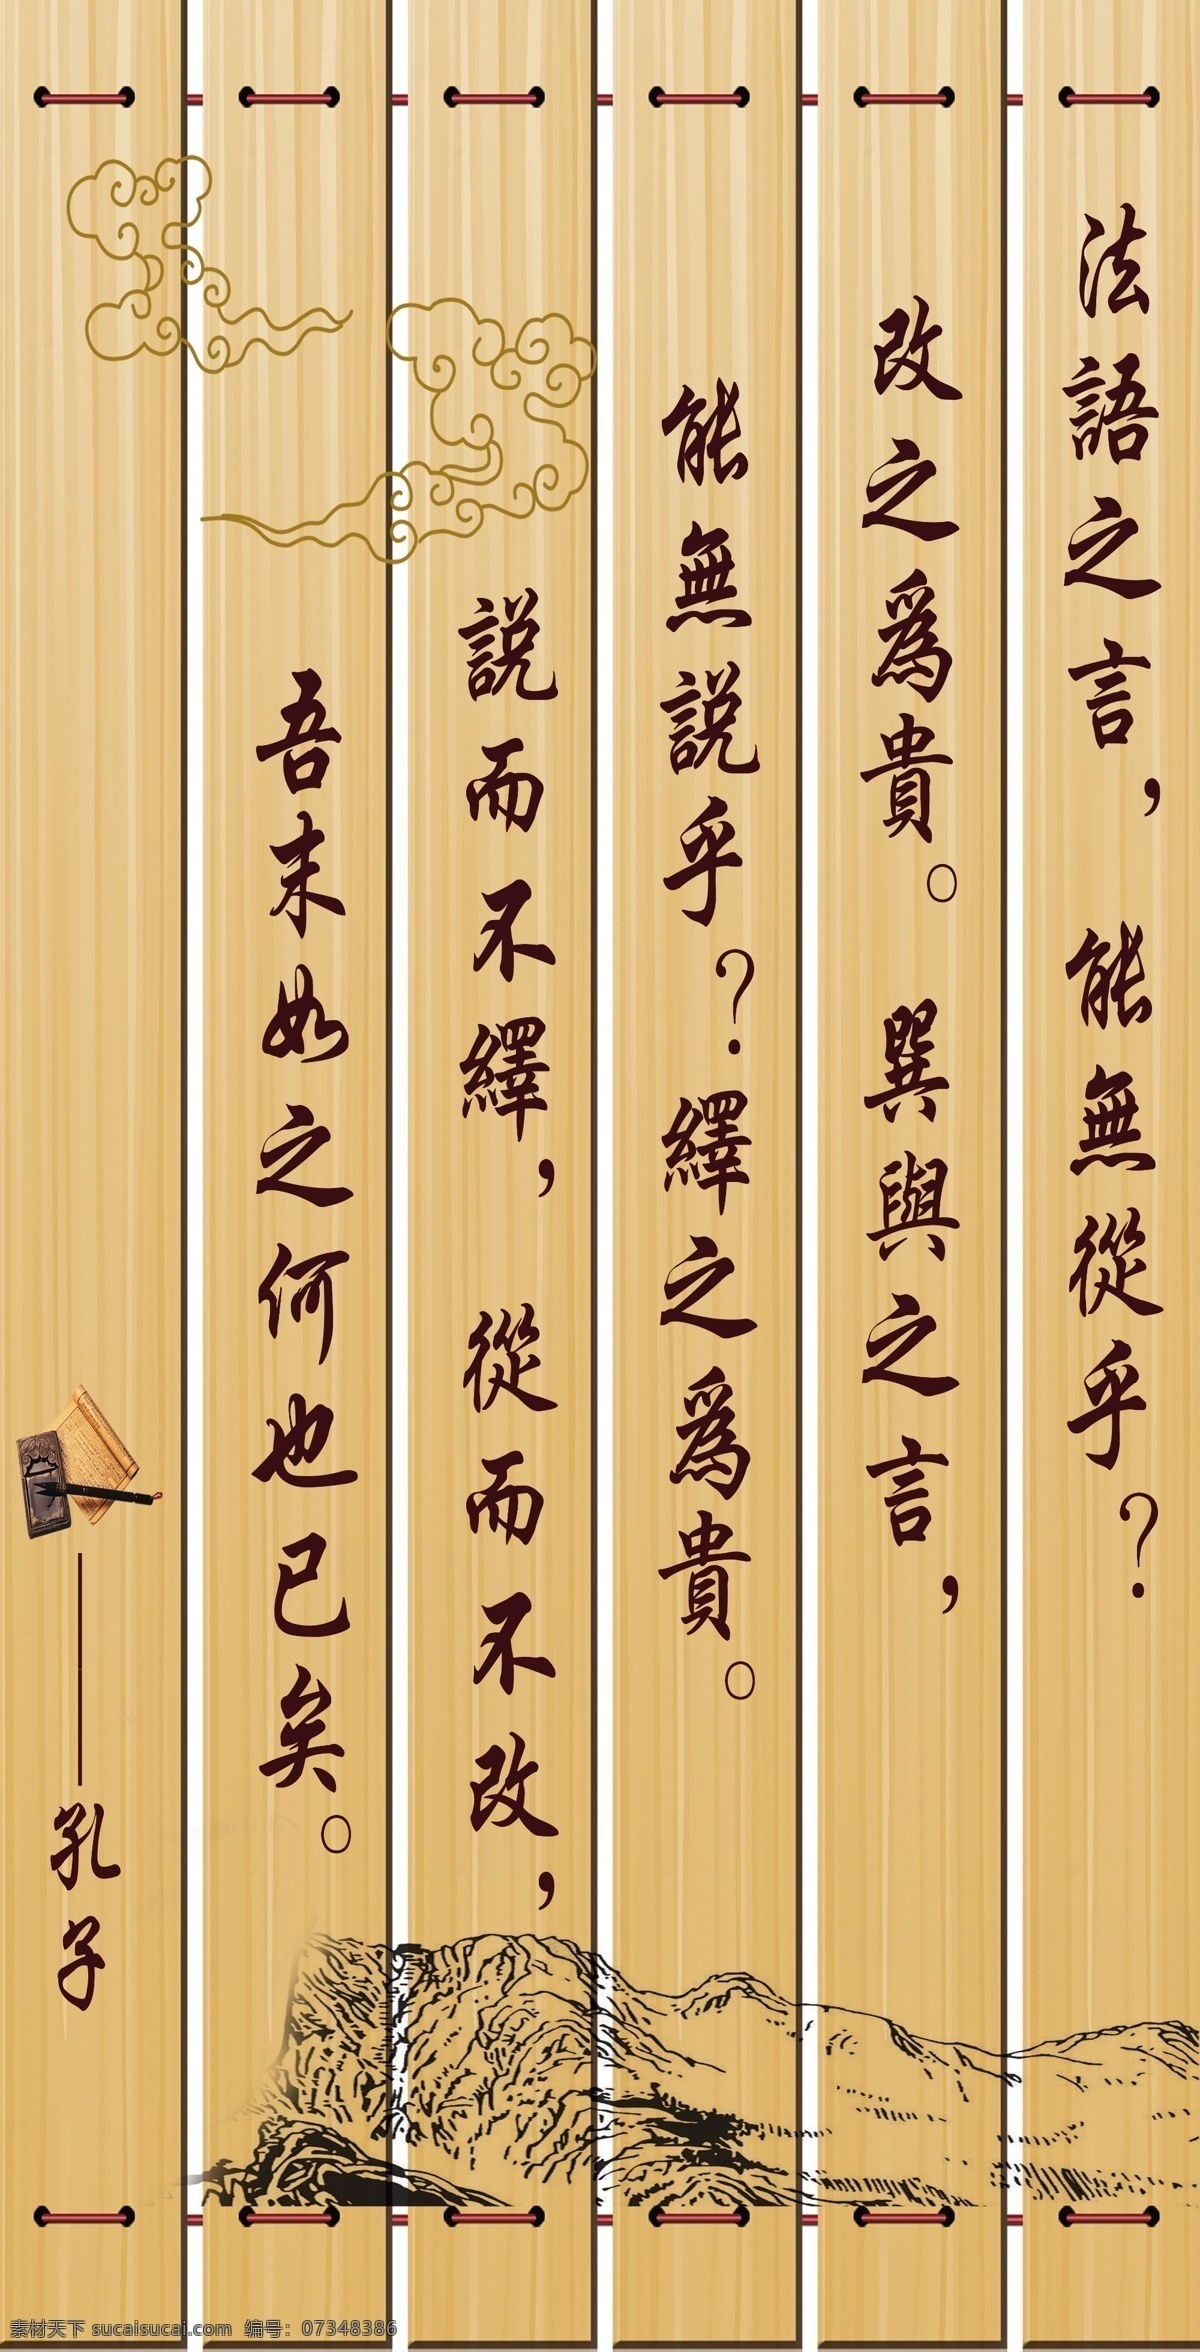 孔子名言文化 孔子 名言 孔子名言 孔子文化 传统文化 宣传栏 展板